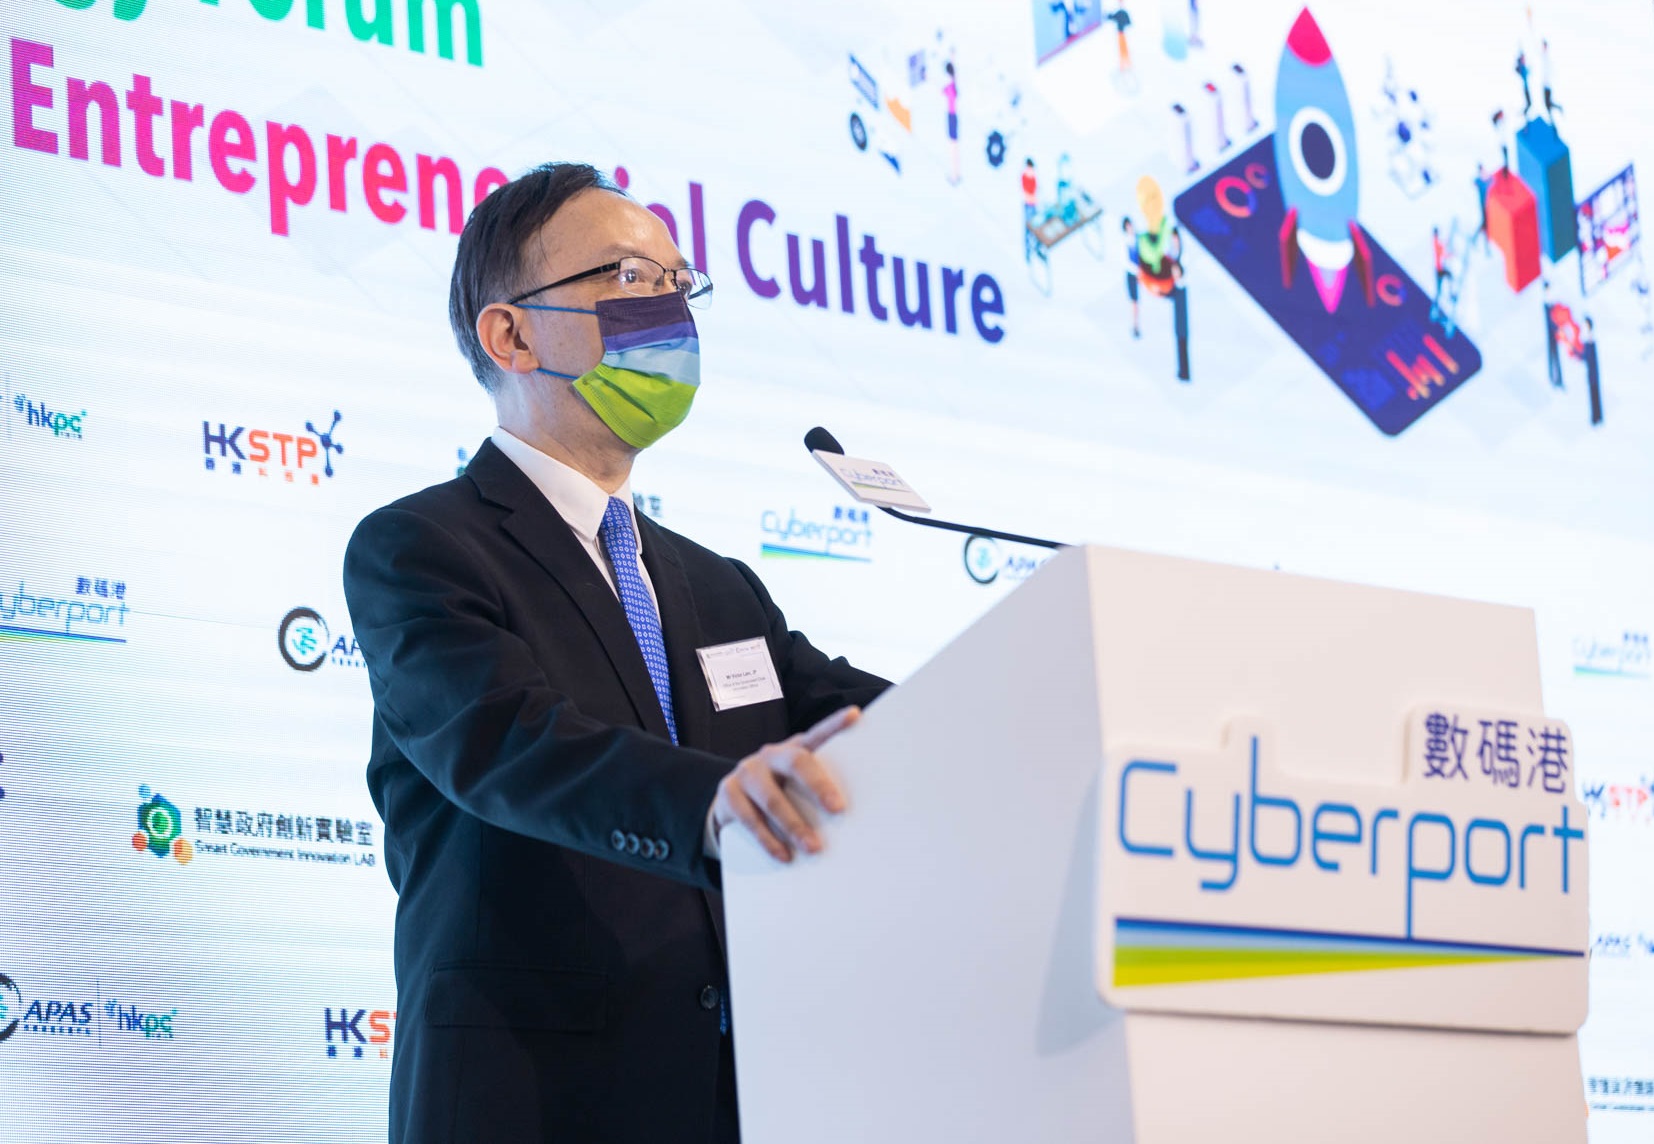 政府資訊科技總監林偉喬先生於「網上技術論壇 — 創新及創業文化」致辭